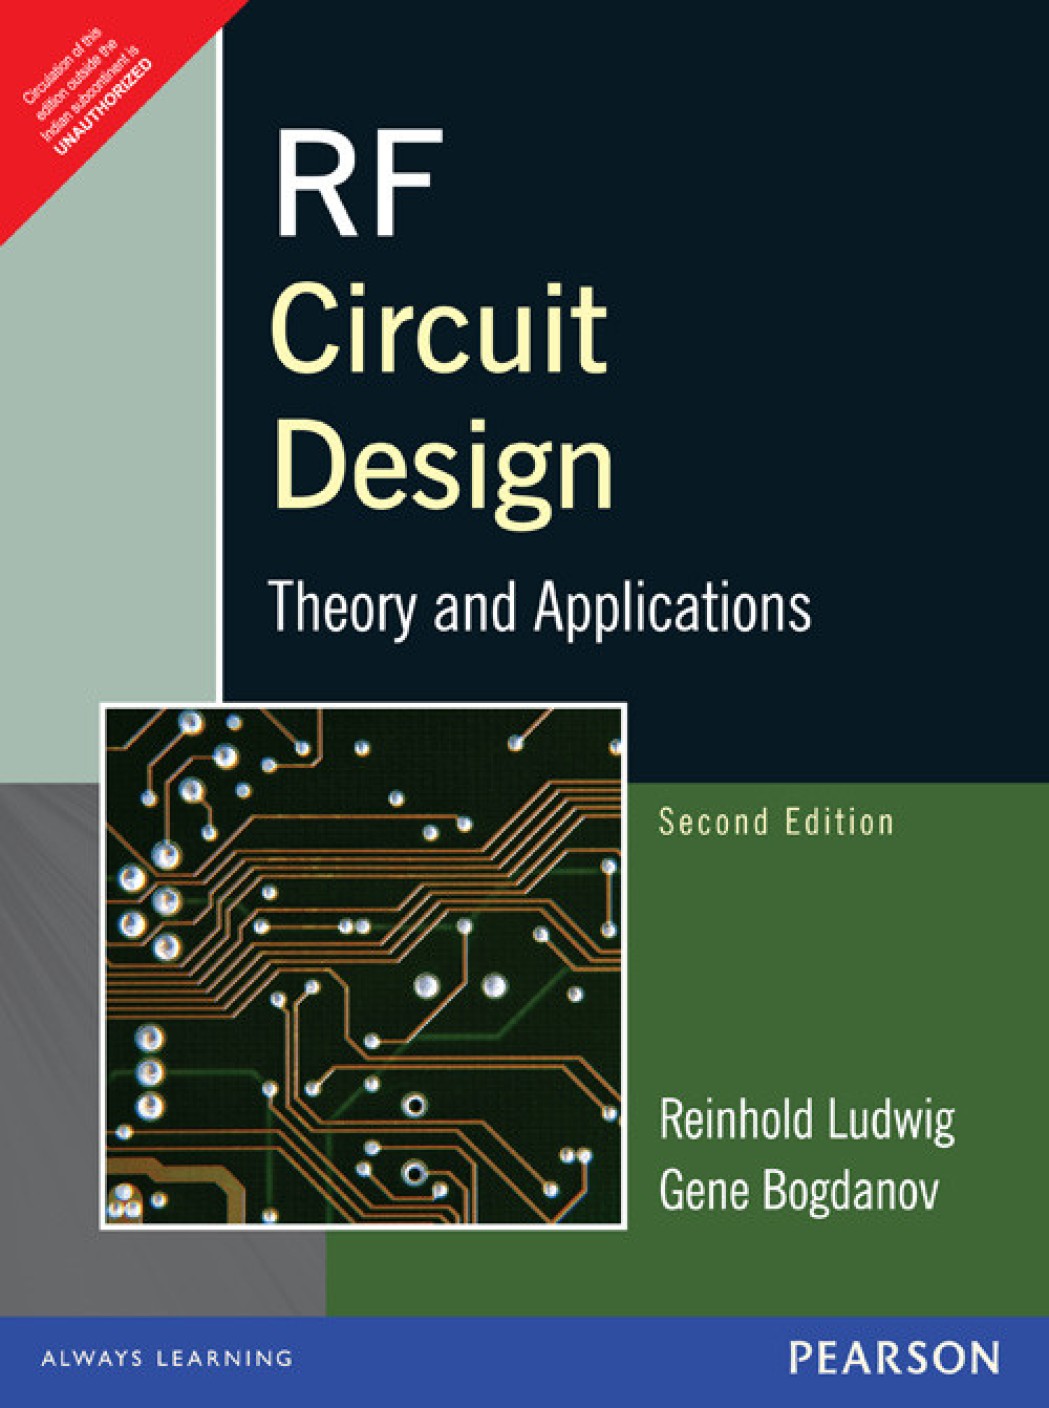 ni circuit design suite 11.0.2 crack